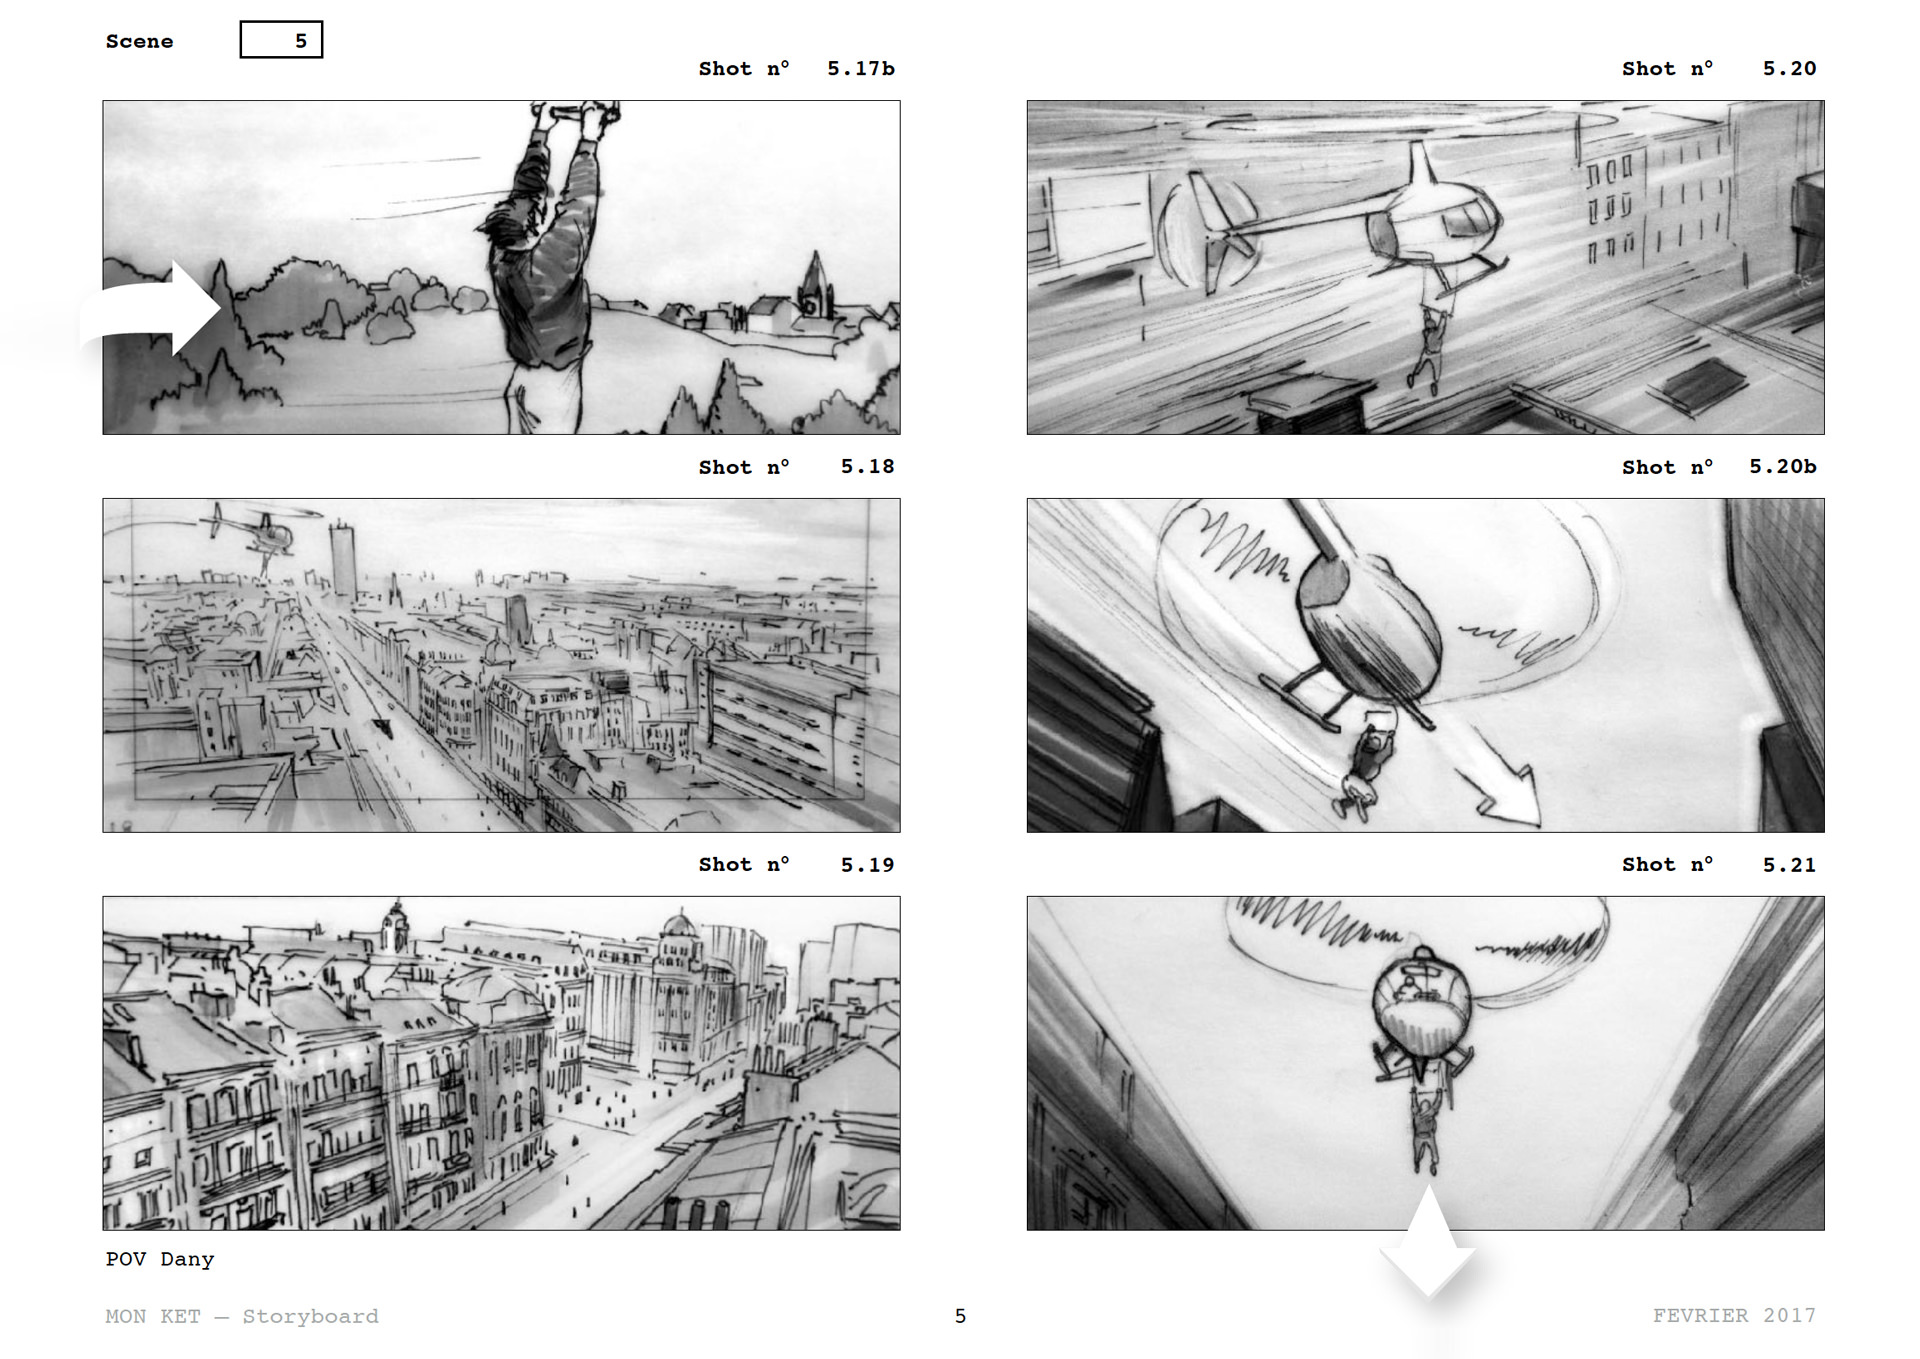 =Mon Ket — Storyboard, scènes d'évasion, page 4